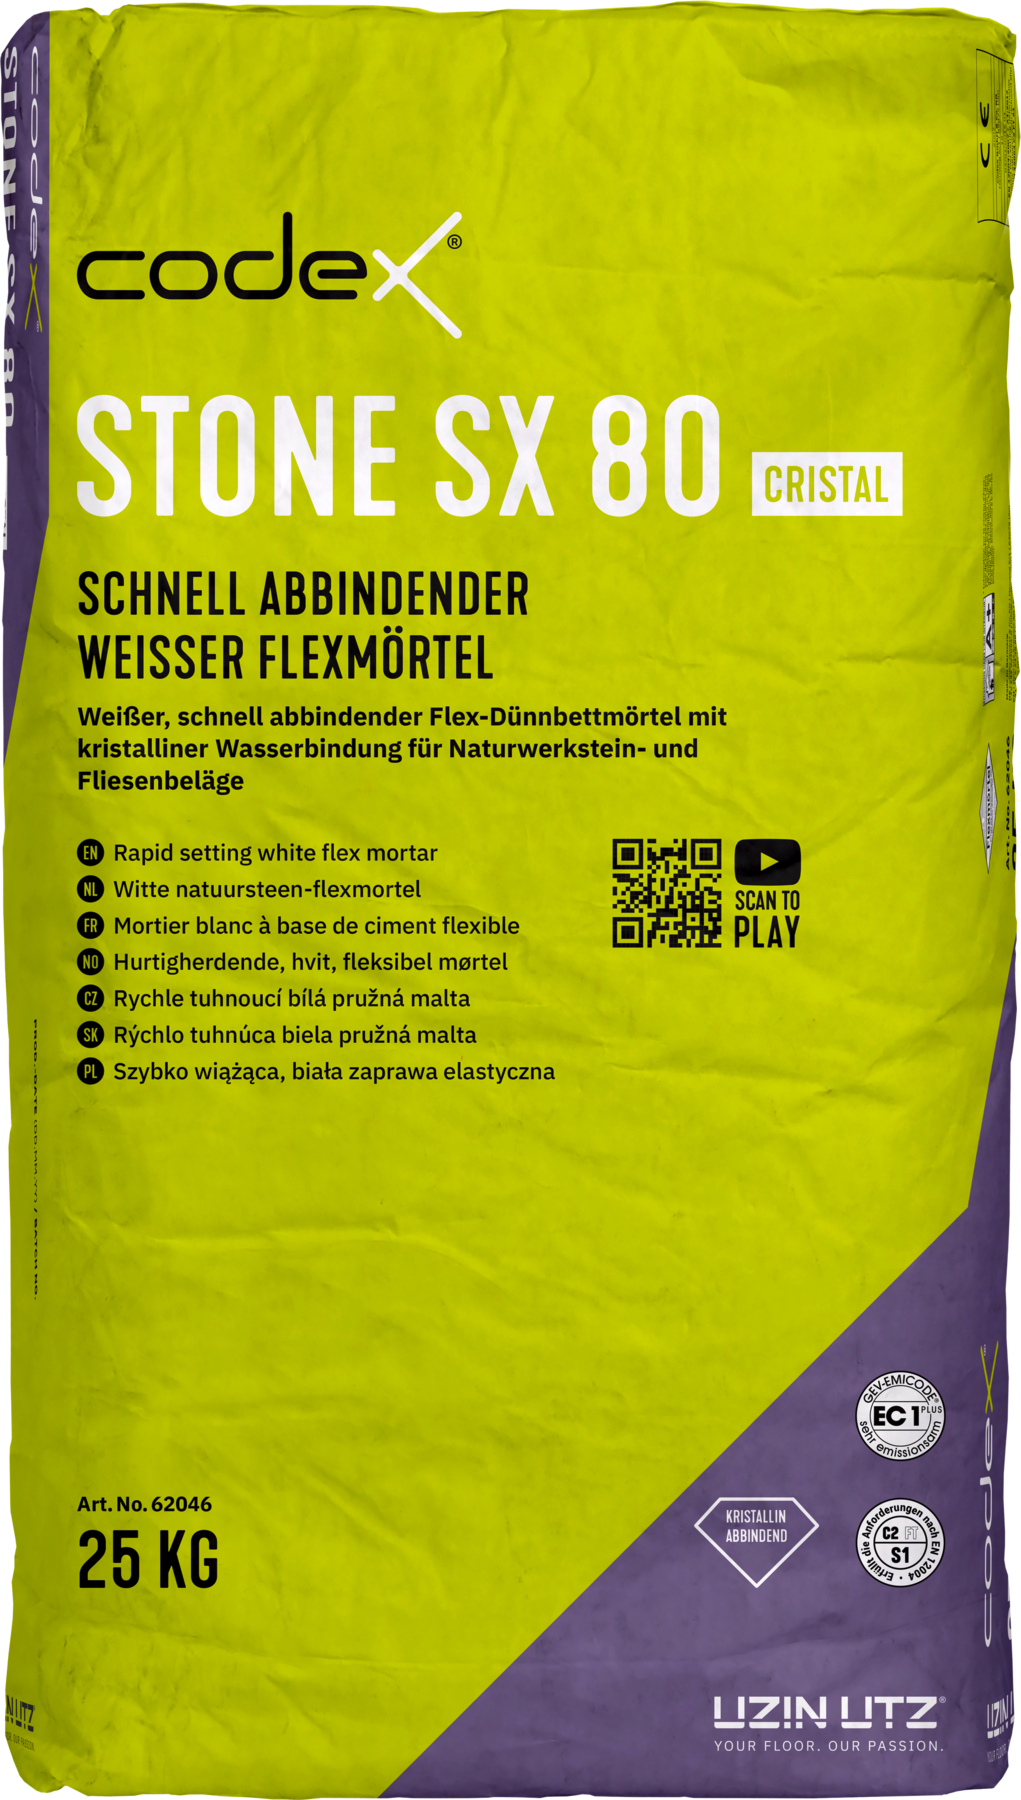 Codex Stone SX 80 cristal 25 kg Schnell abbindender weisser Flexmörtel